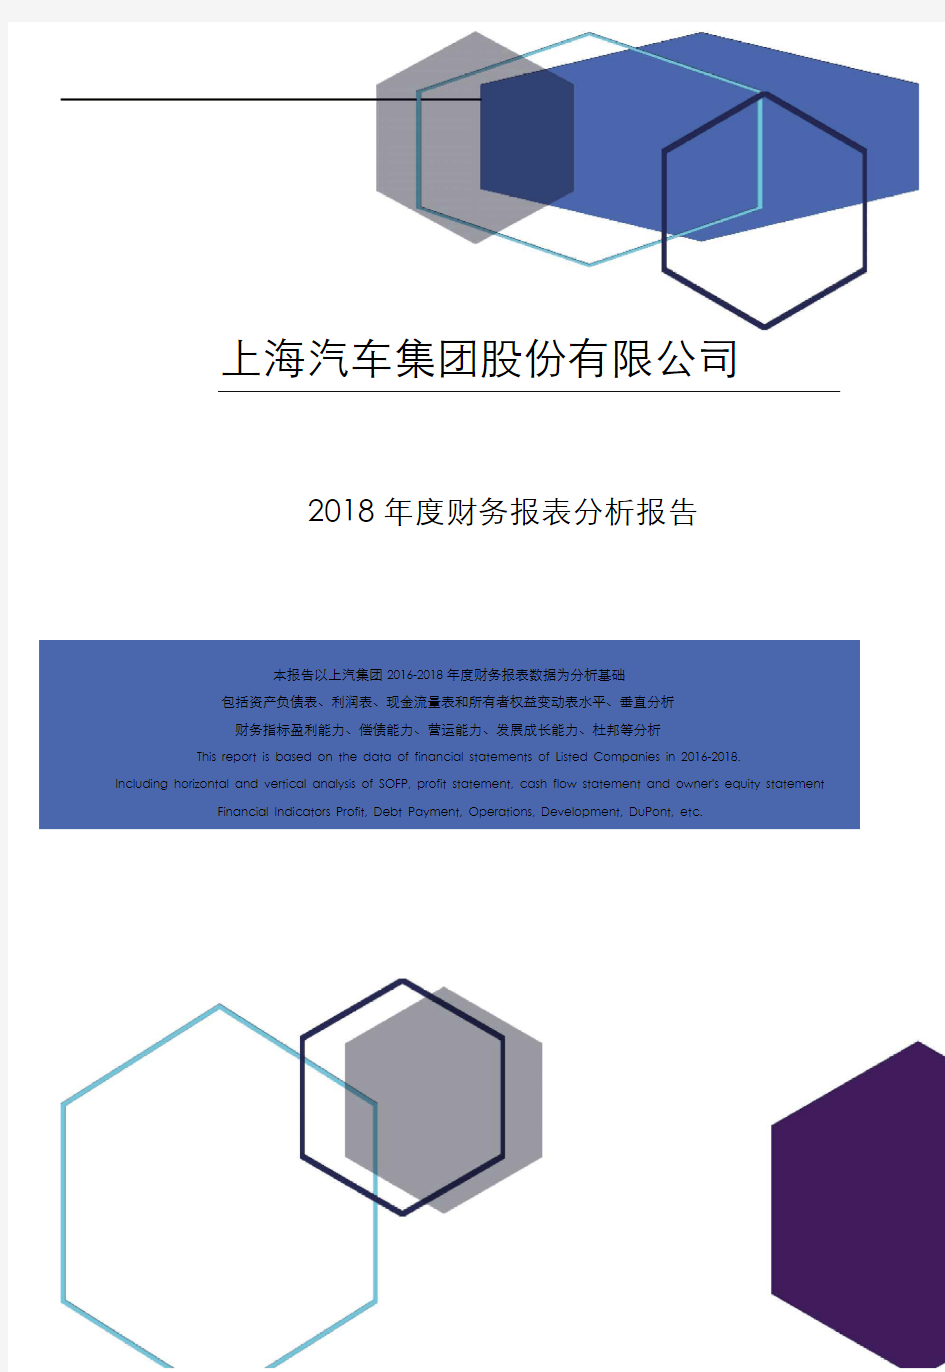 上海汽车集团股份有限公司2018年度财务报表分析报告